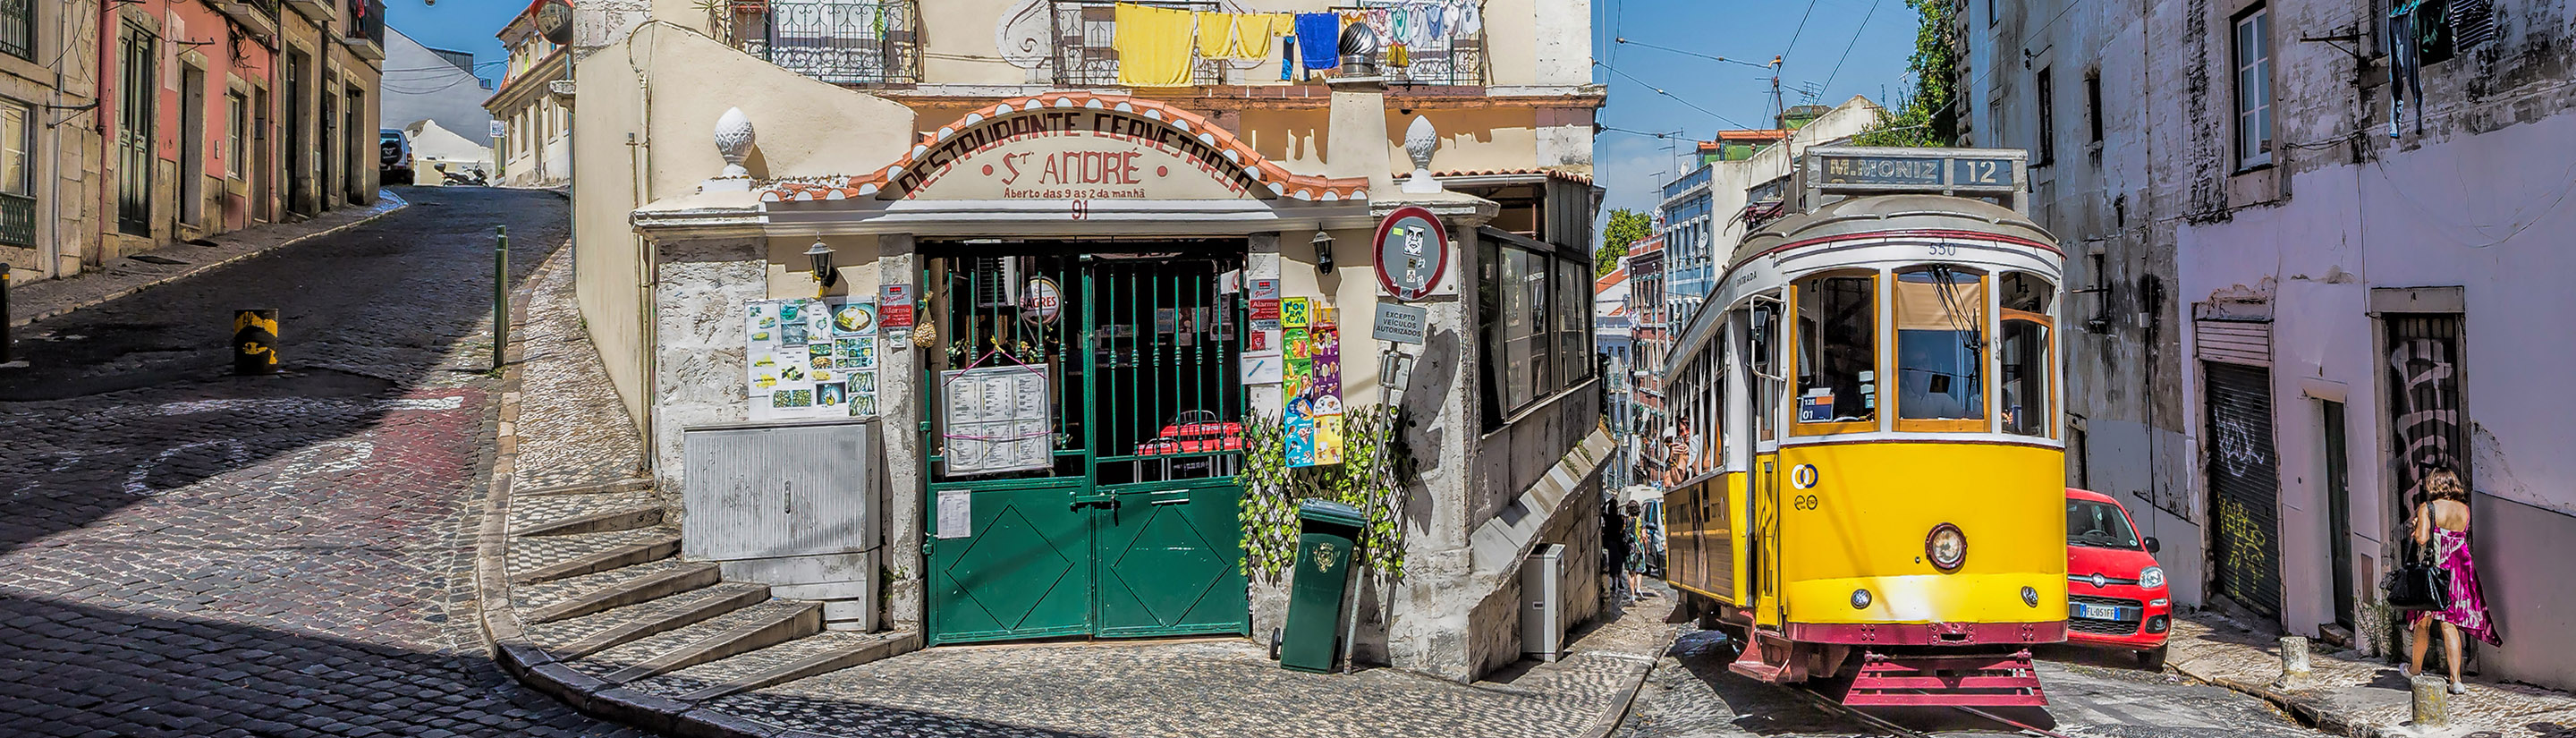 Reisebericht Portugal - von Porto an die Algarve